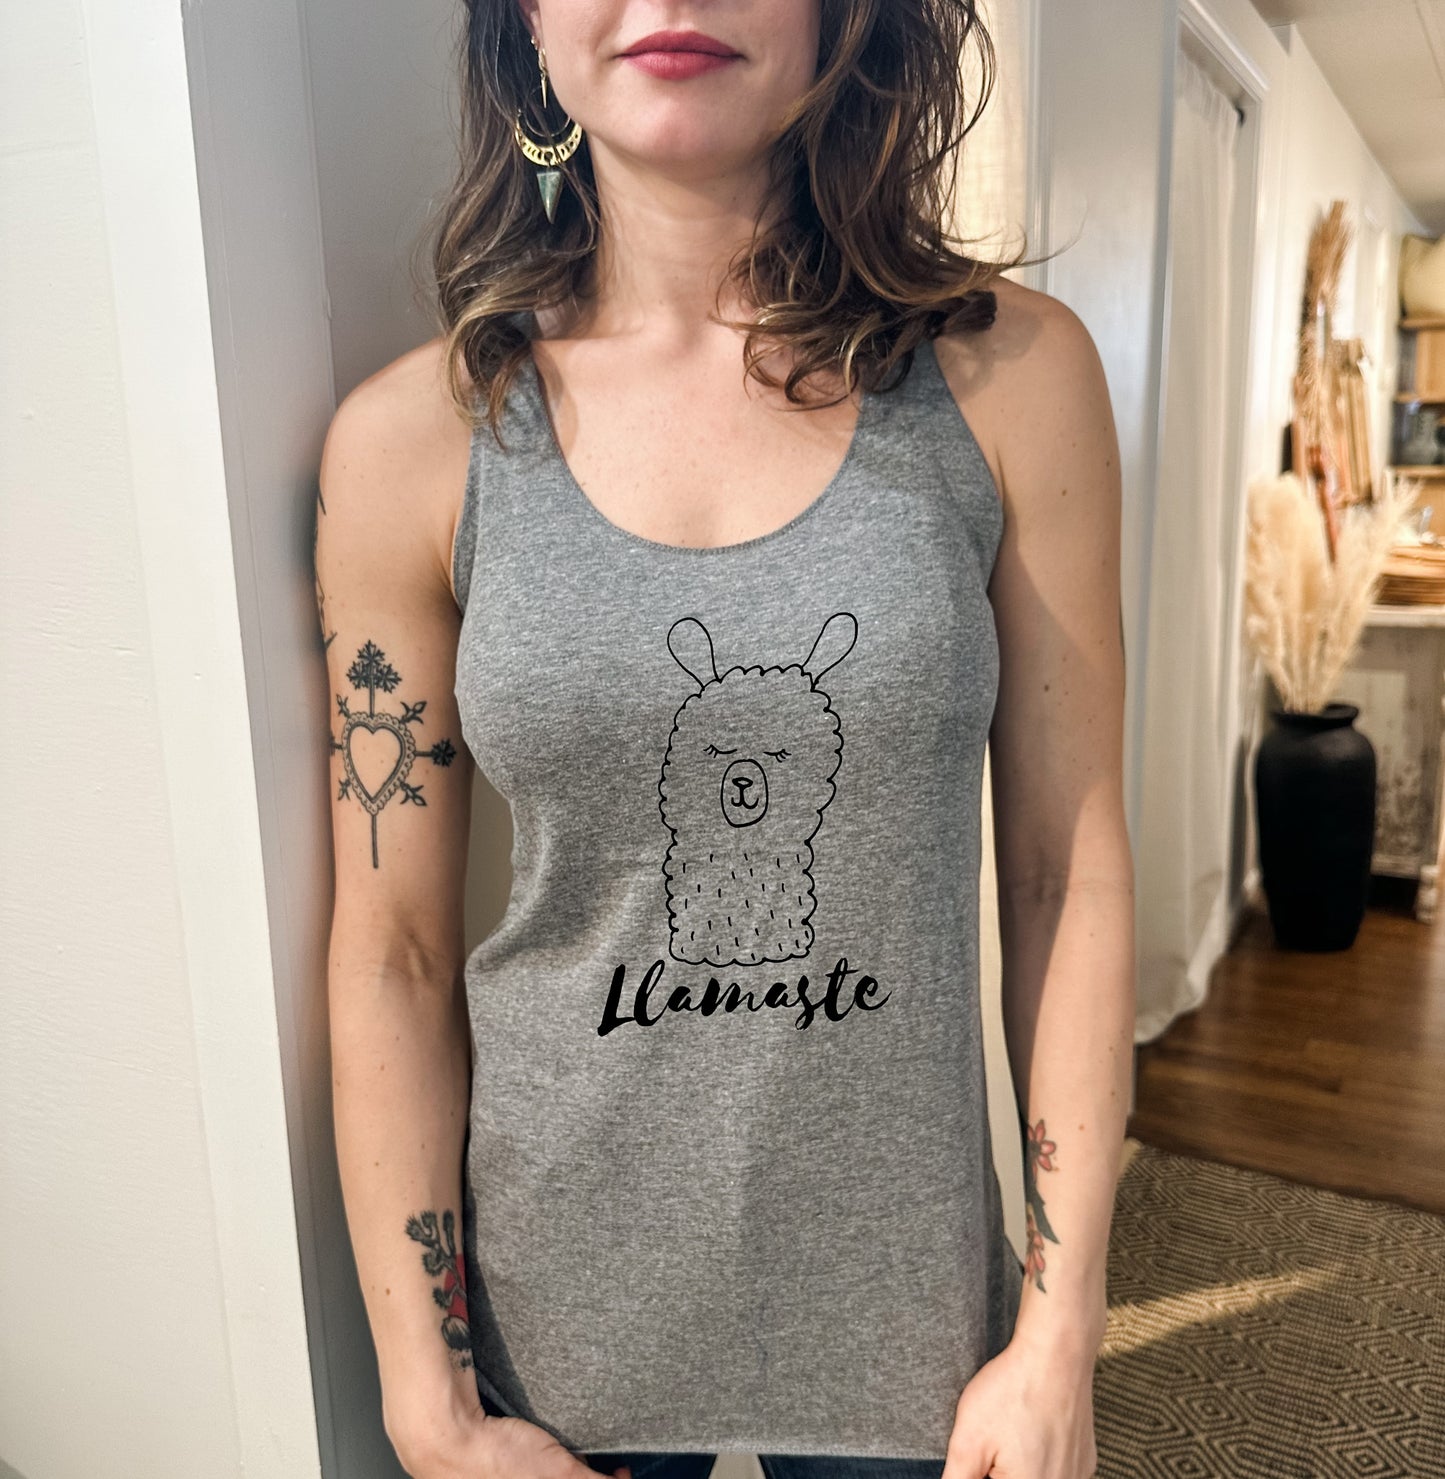 Llamaste (Llama/ Yoga) - Women's Tank - Heather Gray, Tahiti, or Envy